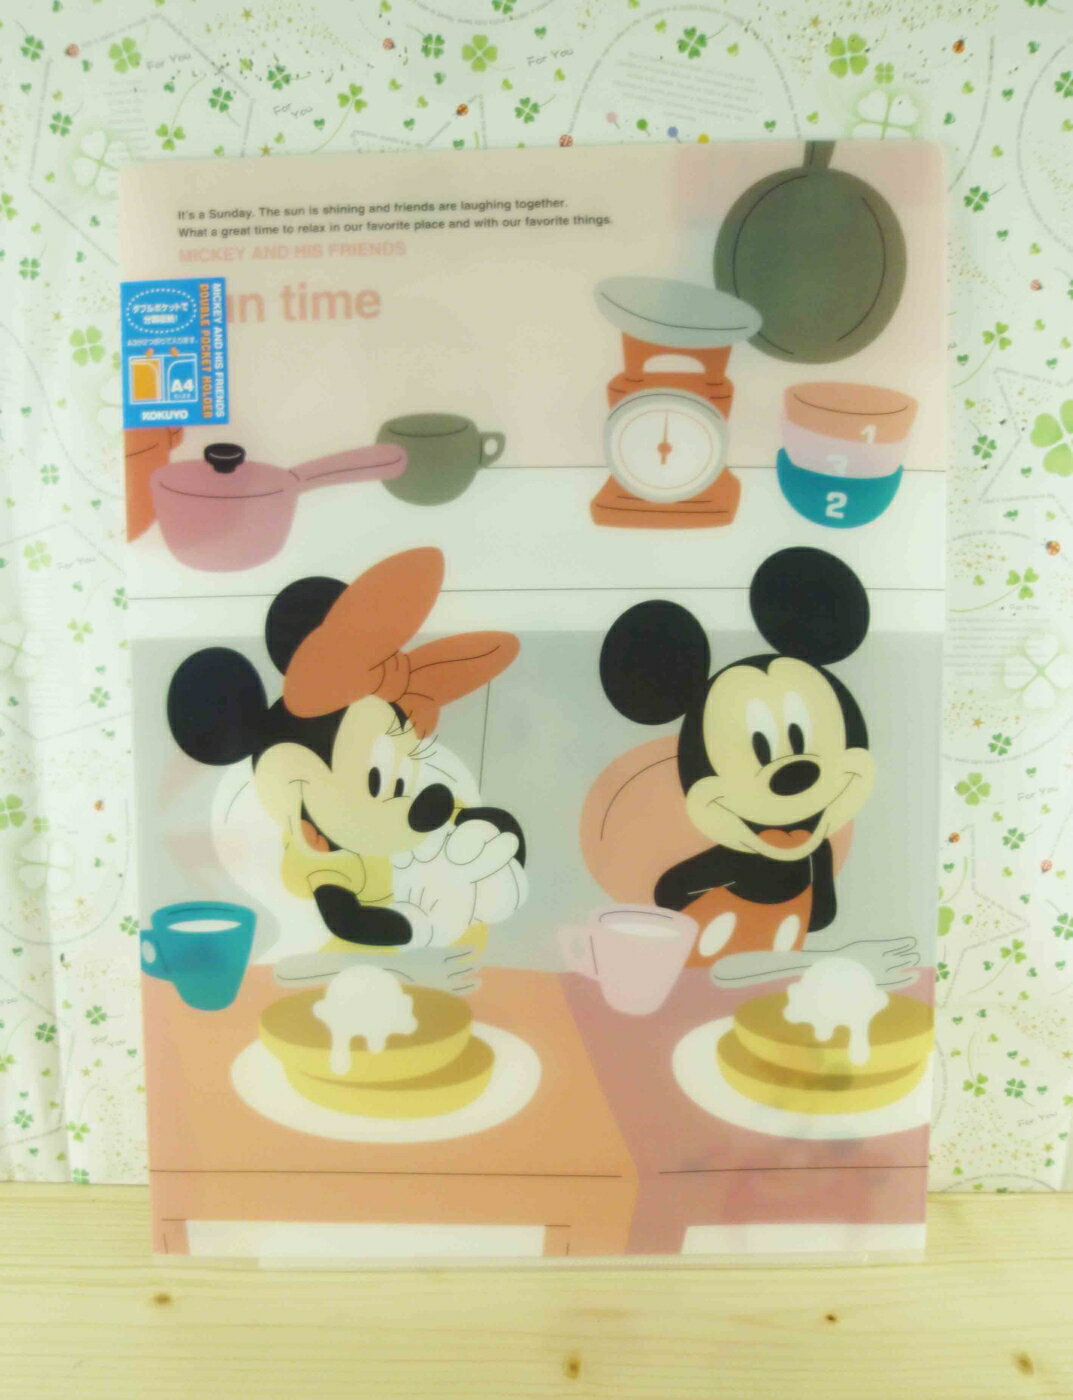 【震撼精品百貨】Micky Mouse 米奇/米妮 分類掀開夾-米奇與米妮吃飯 震撼日式精品百貨